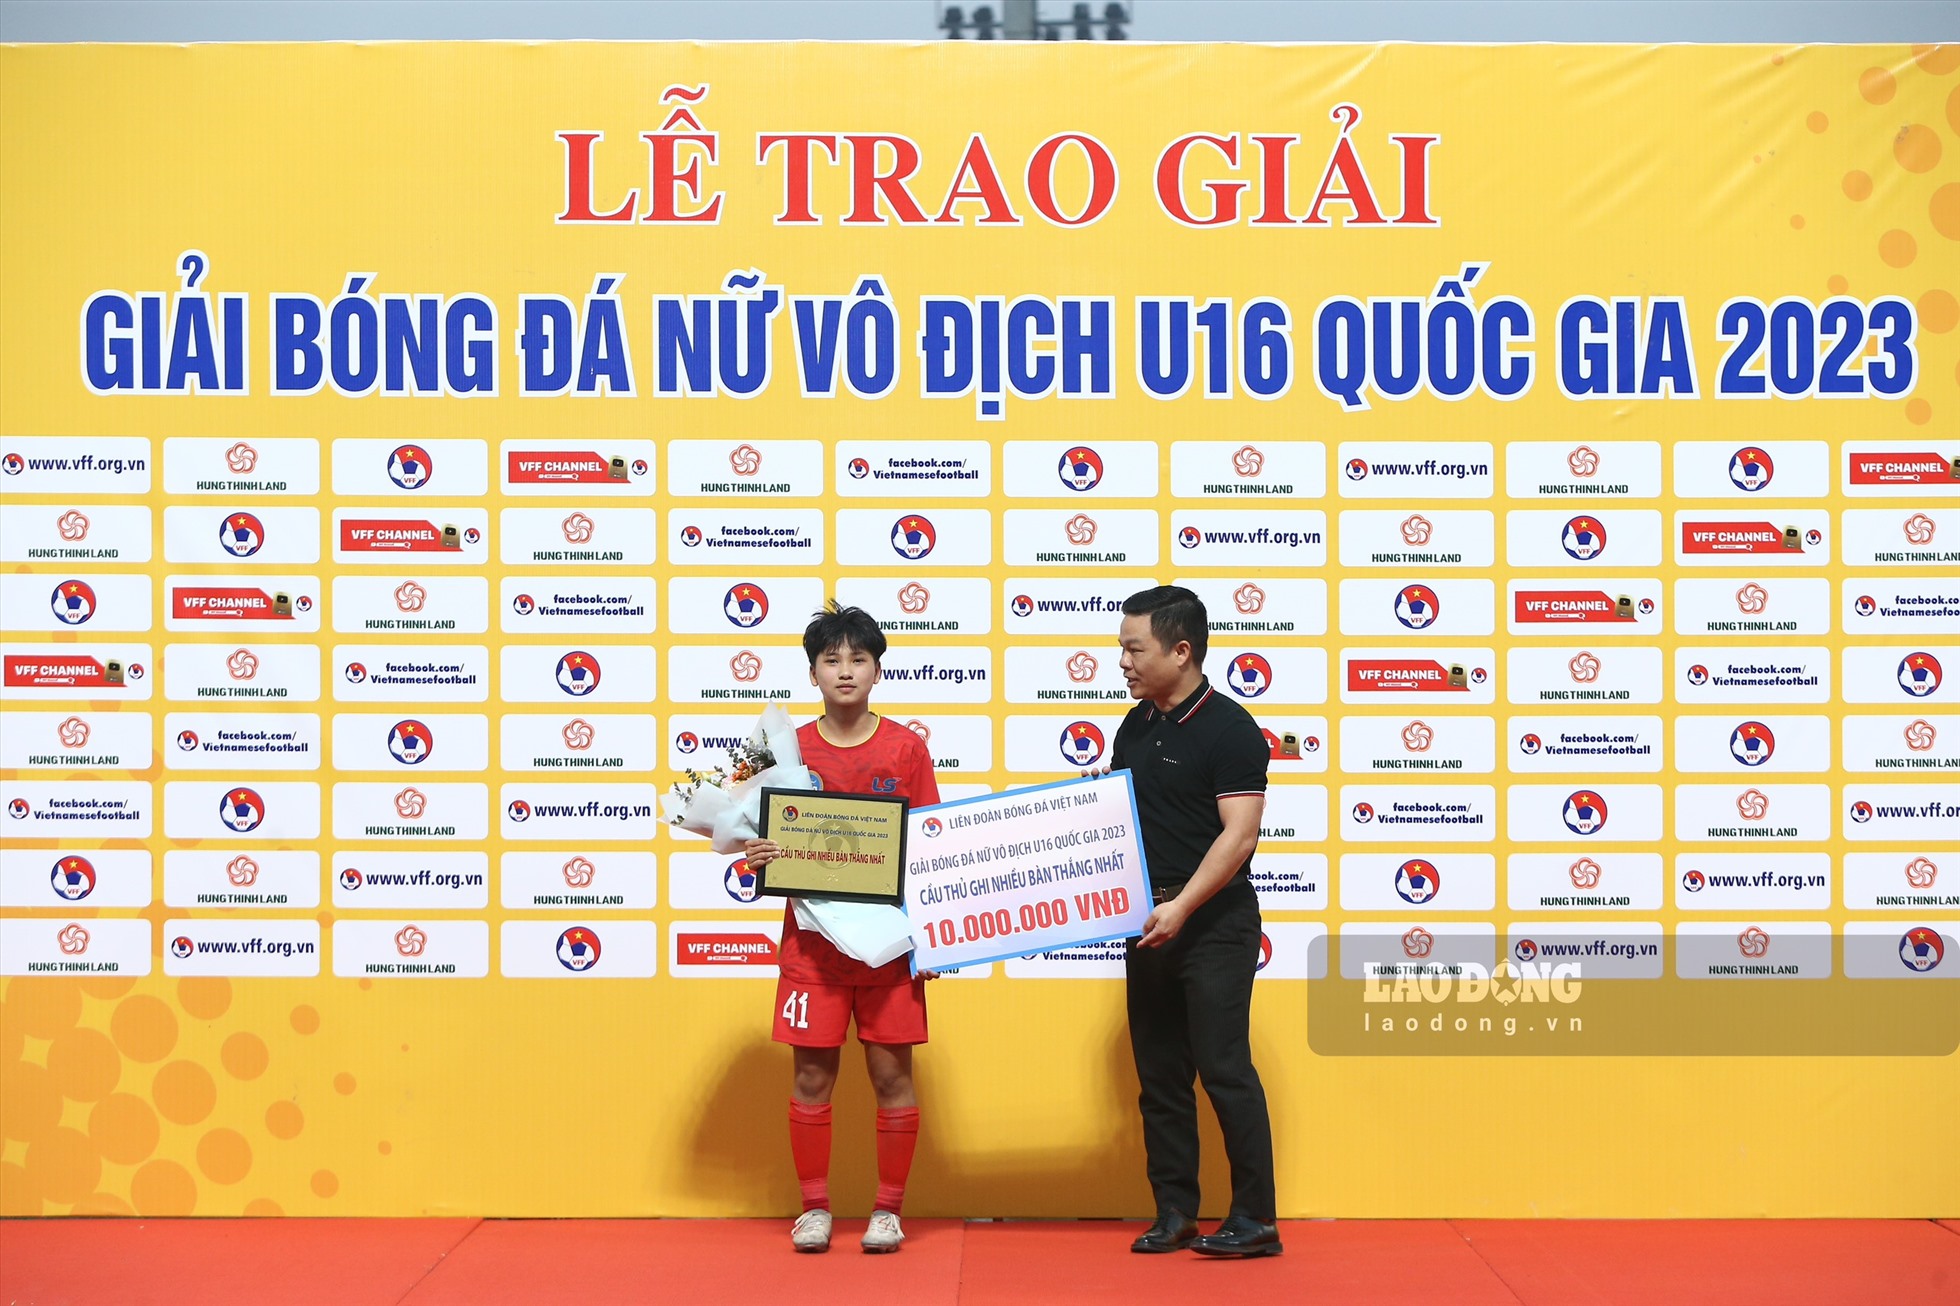 Trương Hoài Trinh (U16 Hà Nội) giành giải thưởng cầu thủ ghi nhiều bàn thắng nhất với 6 bàn. Ảnh: Minh Quân